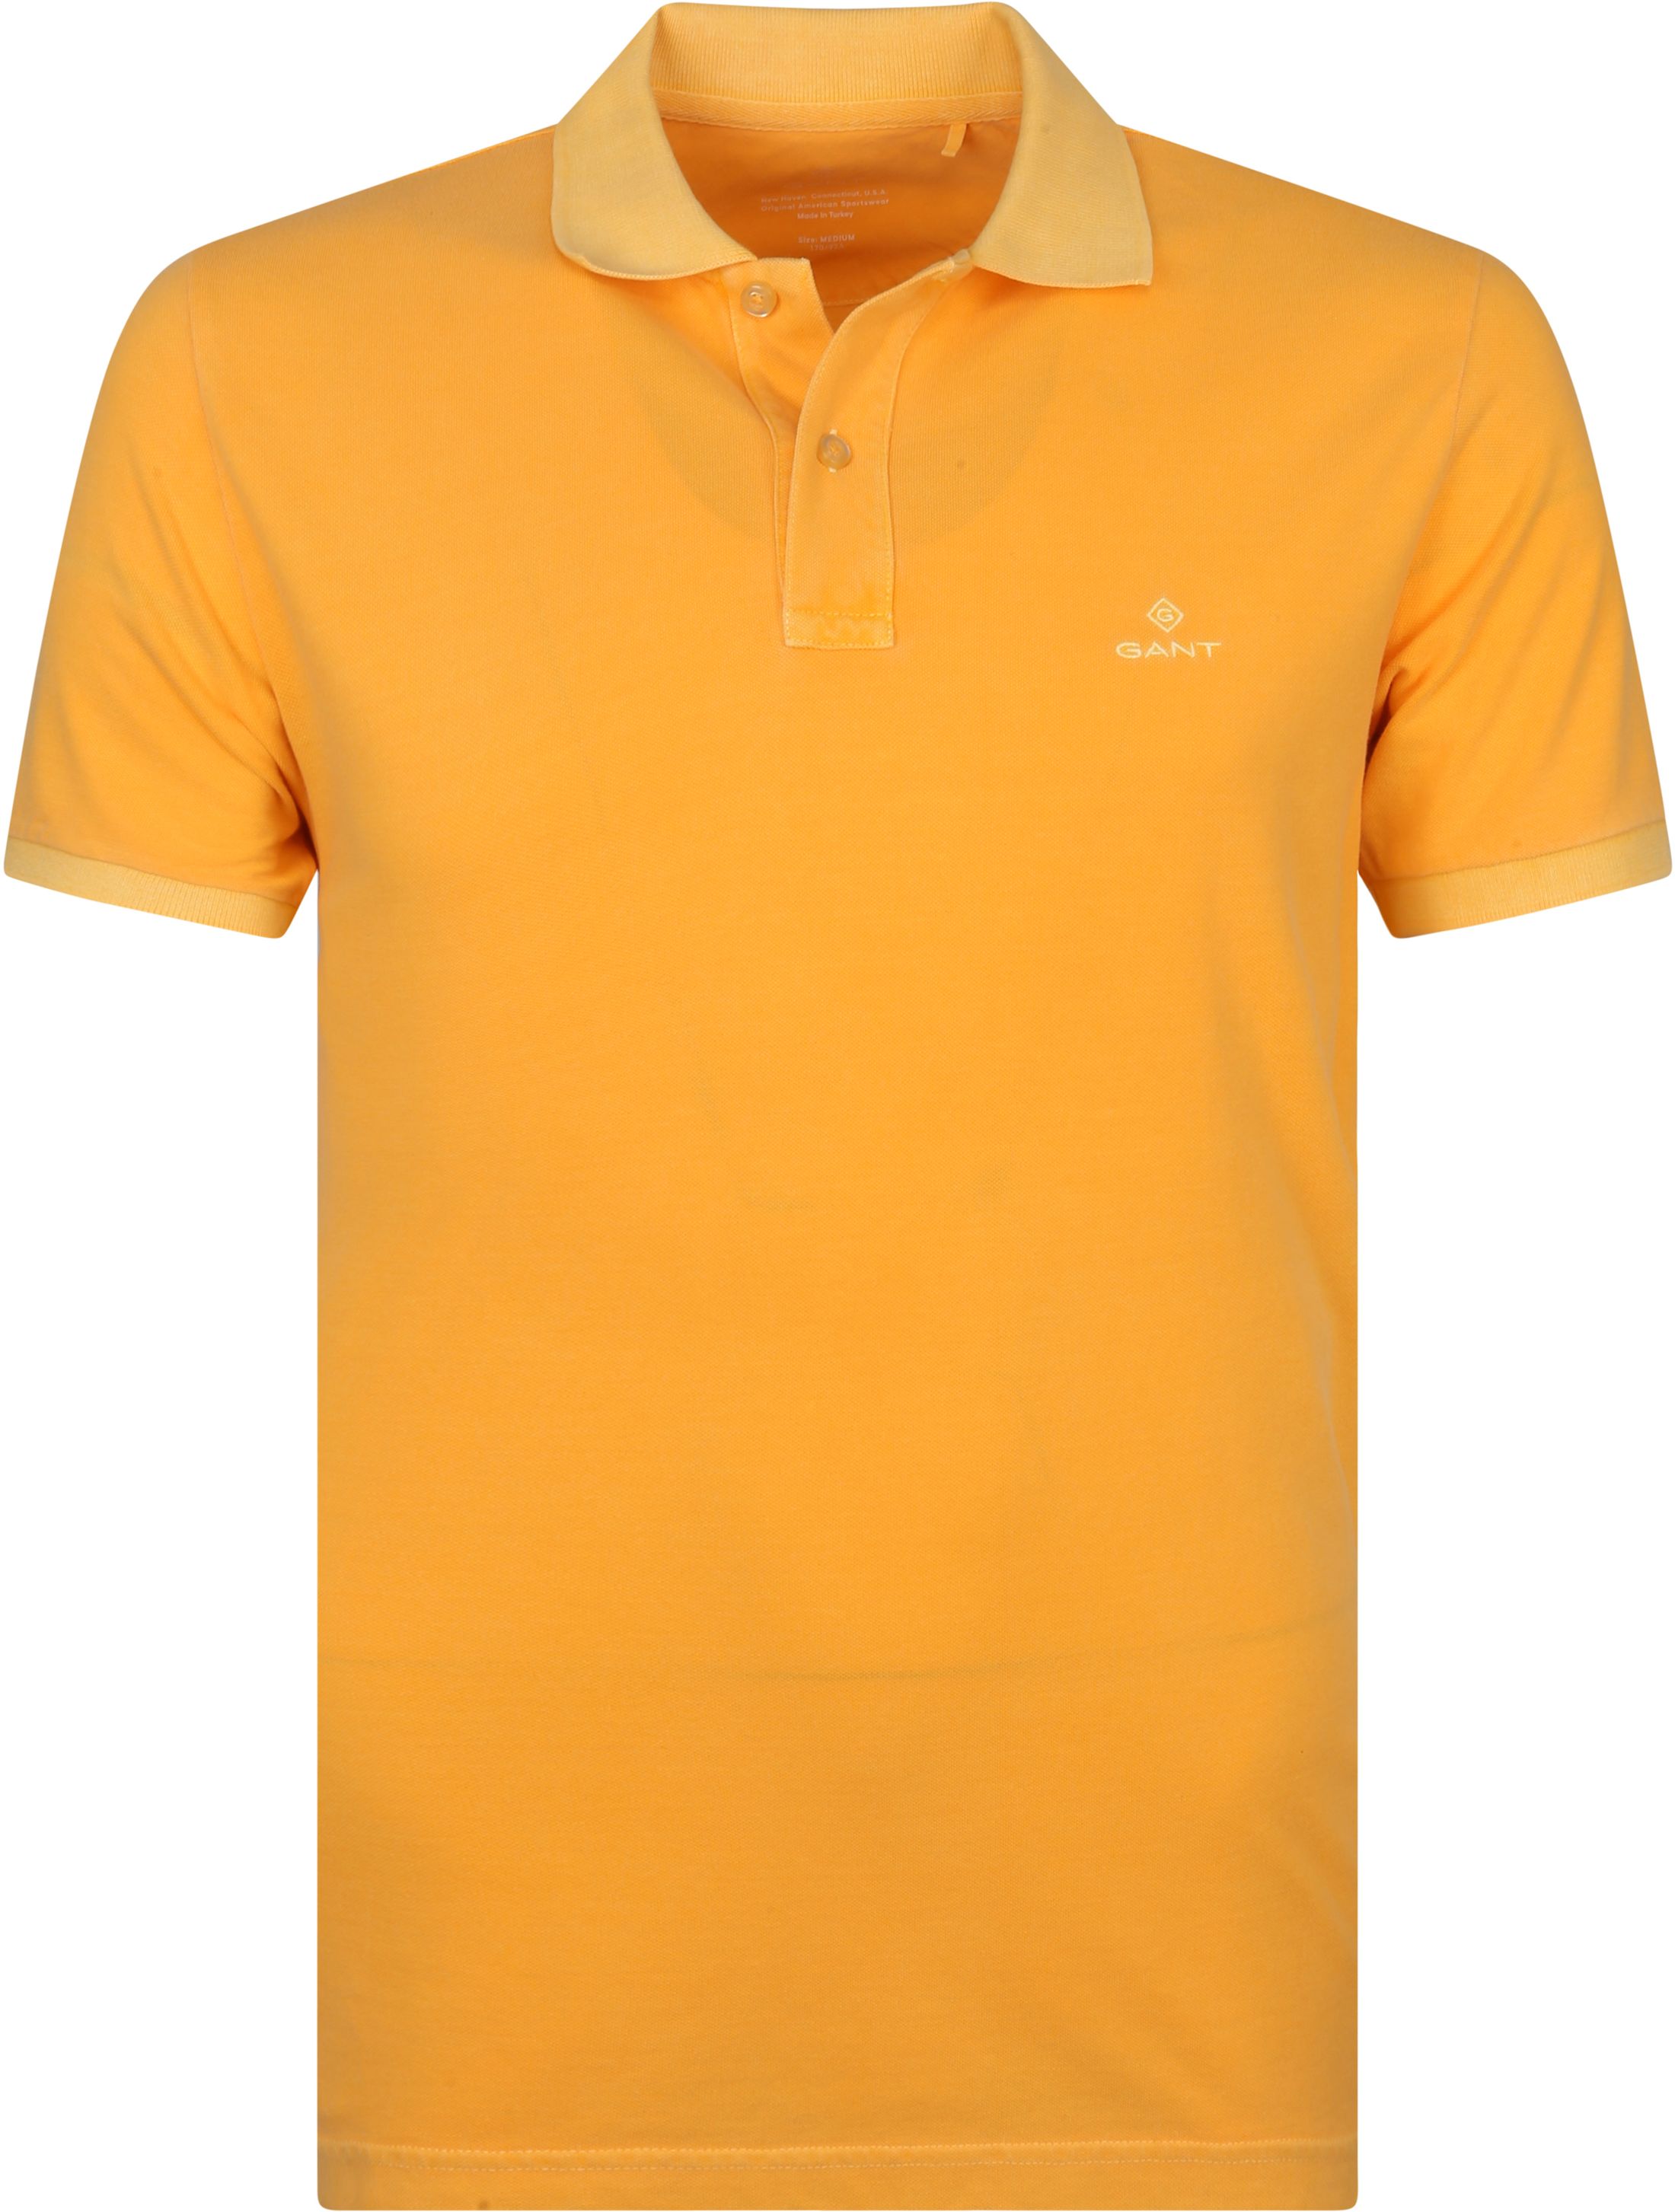 Gant Sunfaded Polo Orange size 3XL